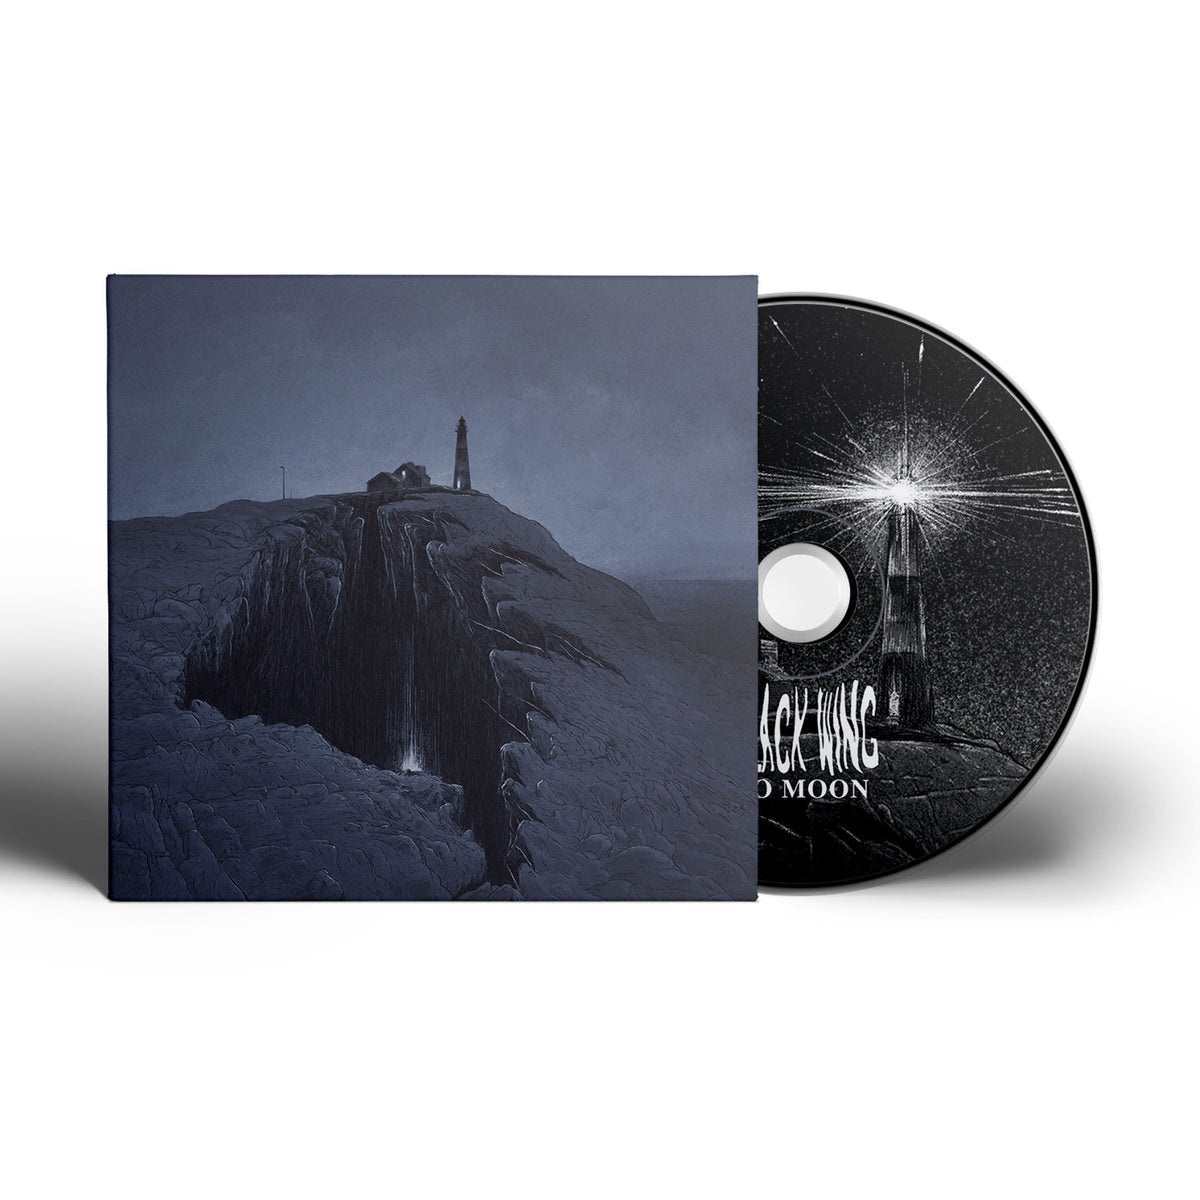 The Flenser CD Black Wing &quot;No Moon&quot; CD